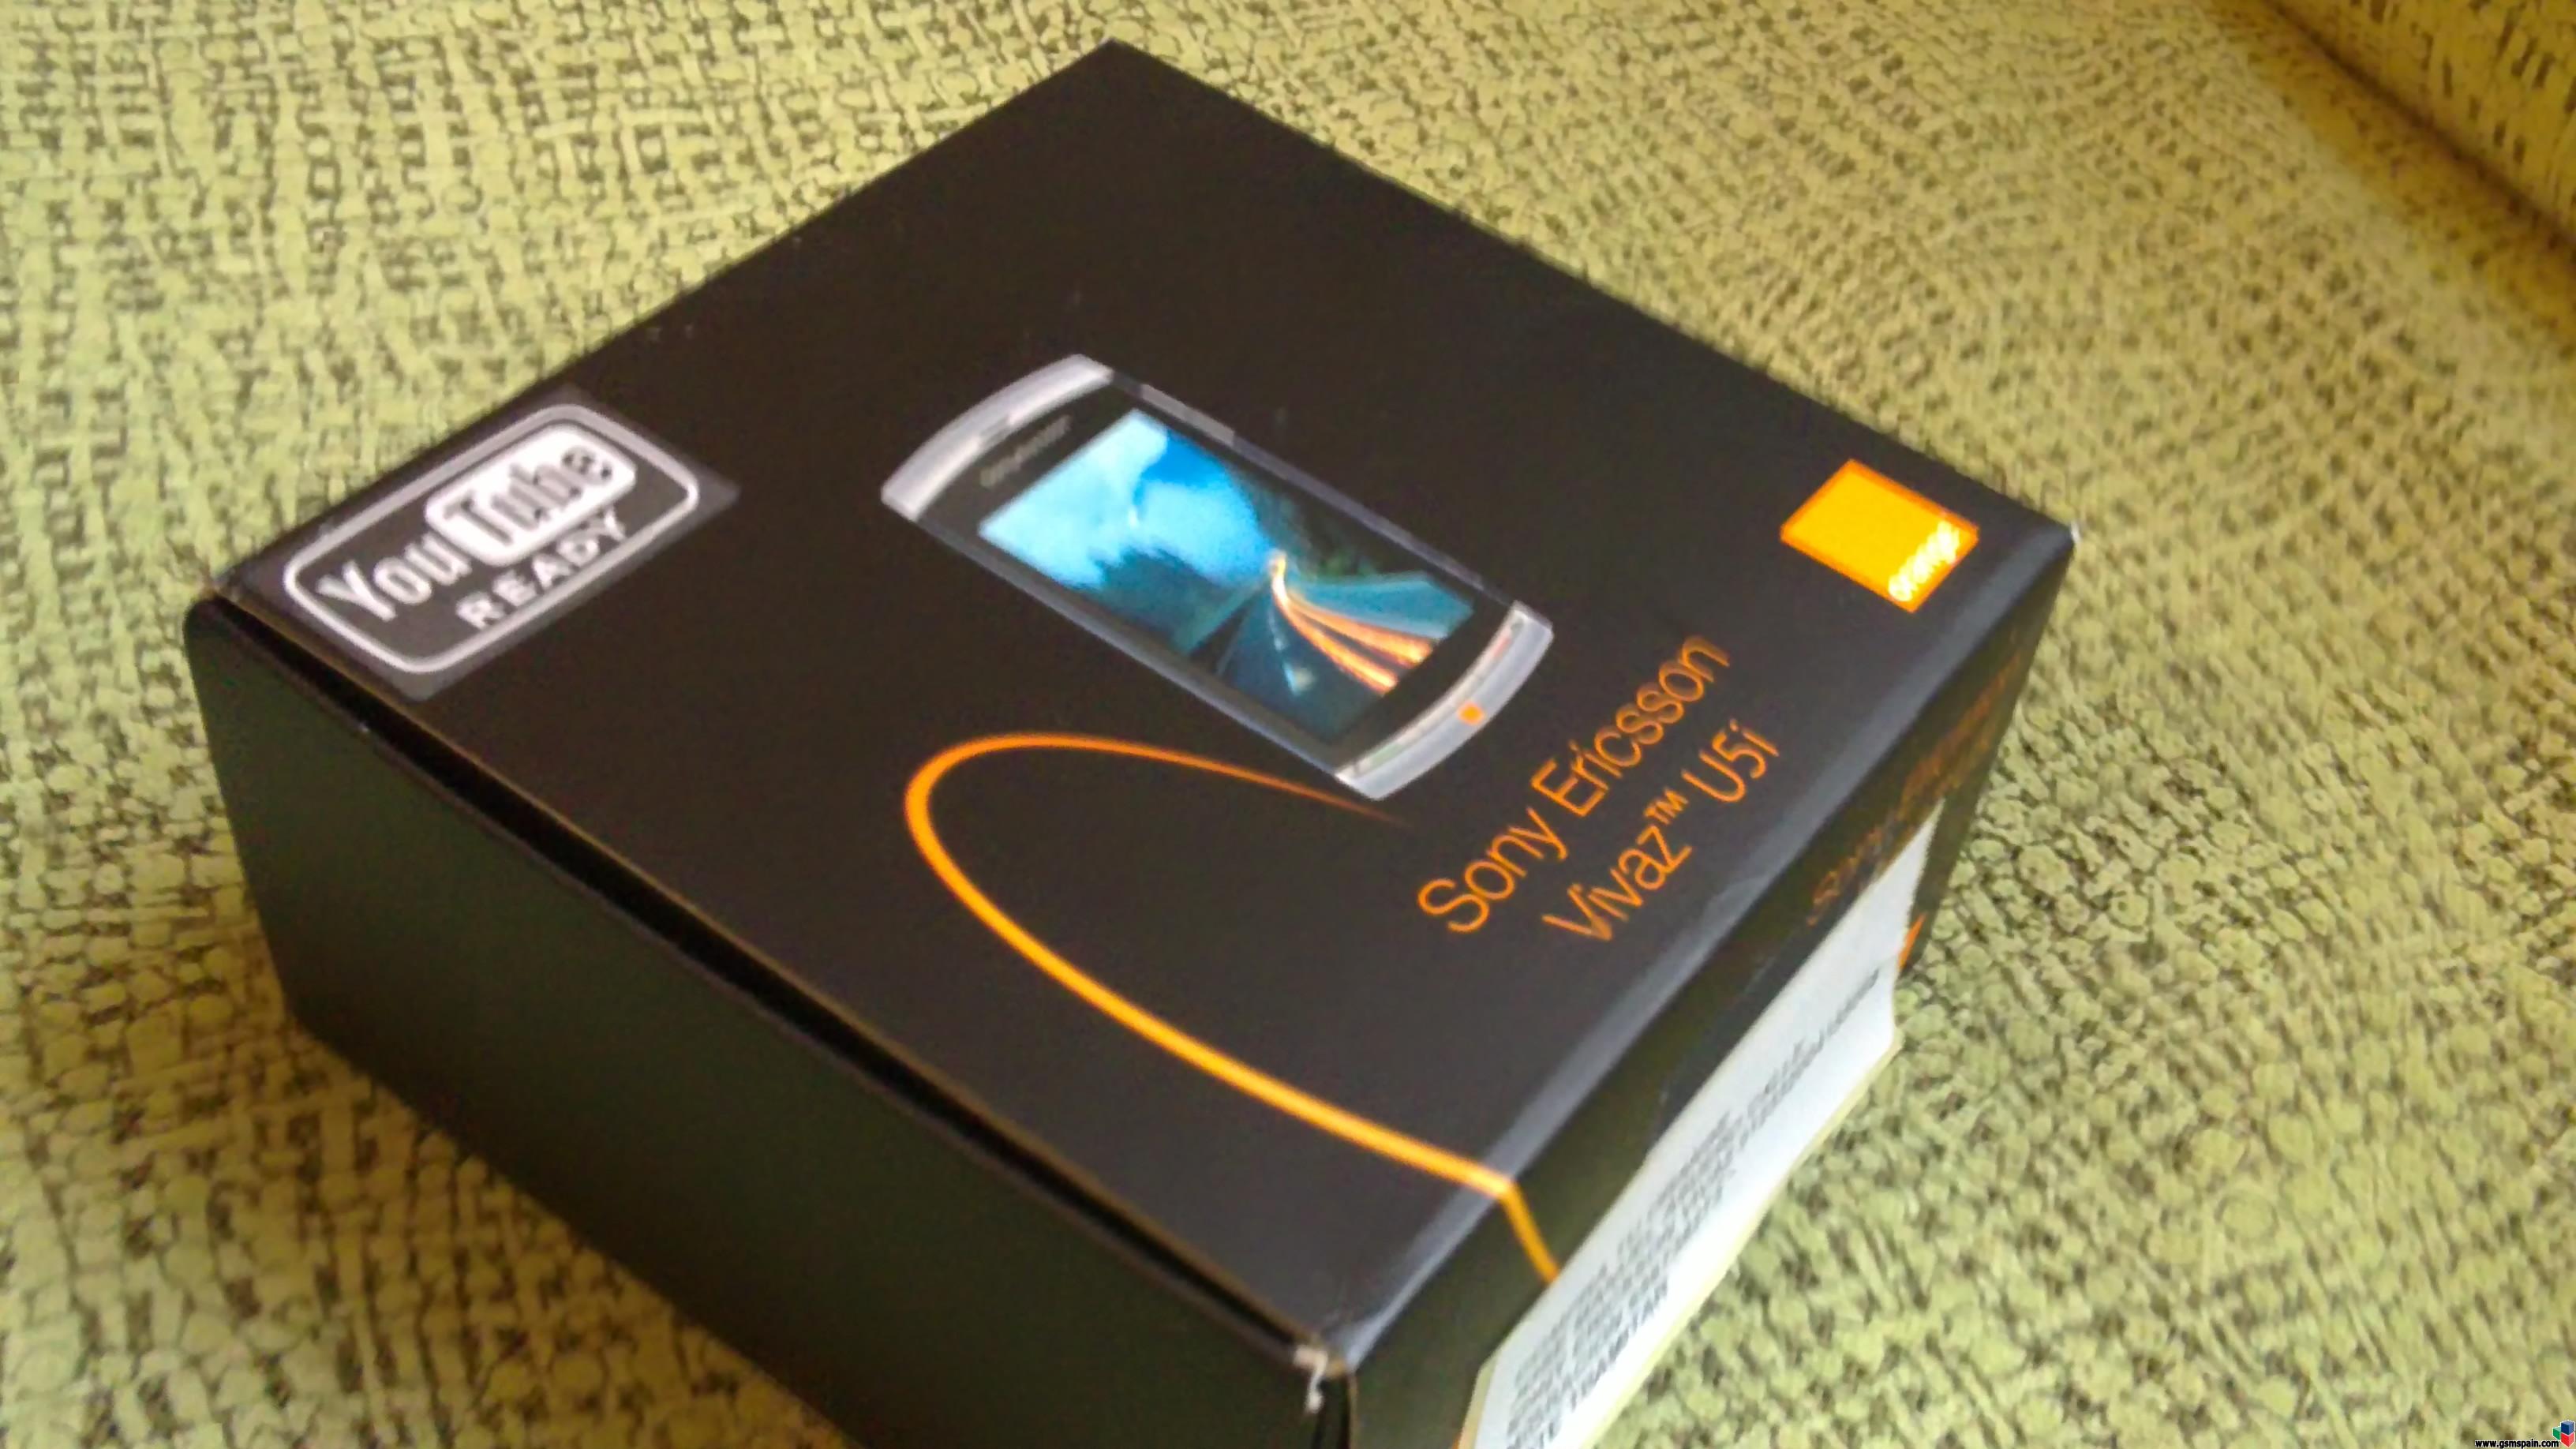 Vendo Sony Ericsson Vivaz de Orange